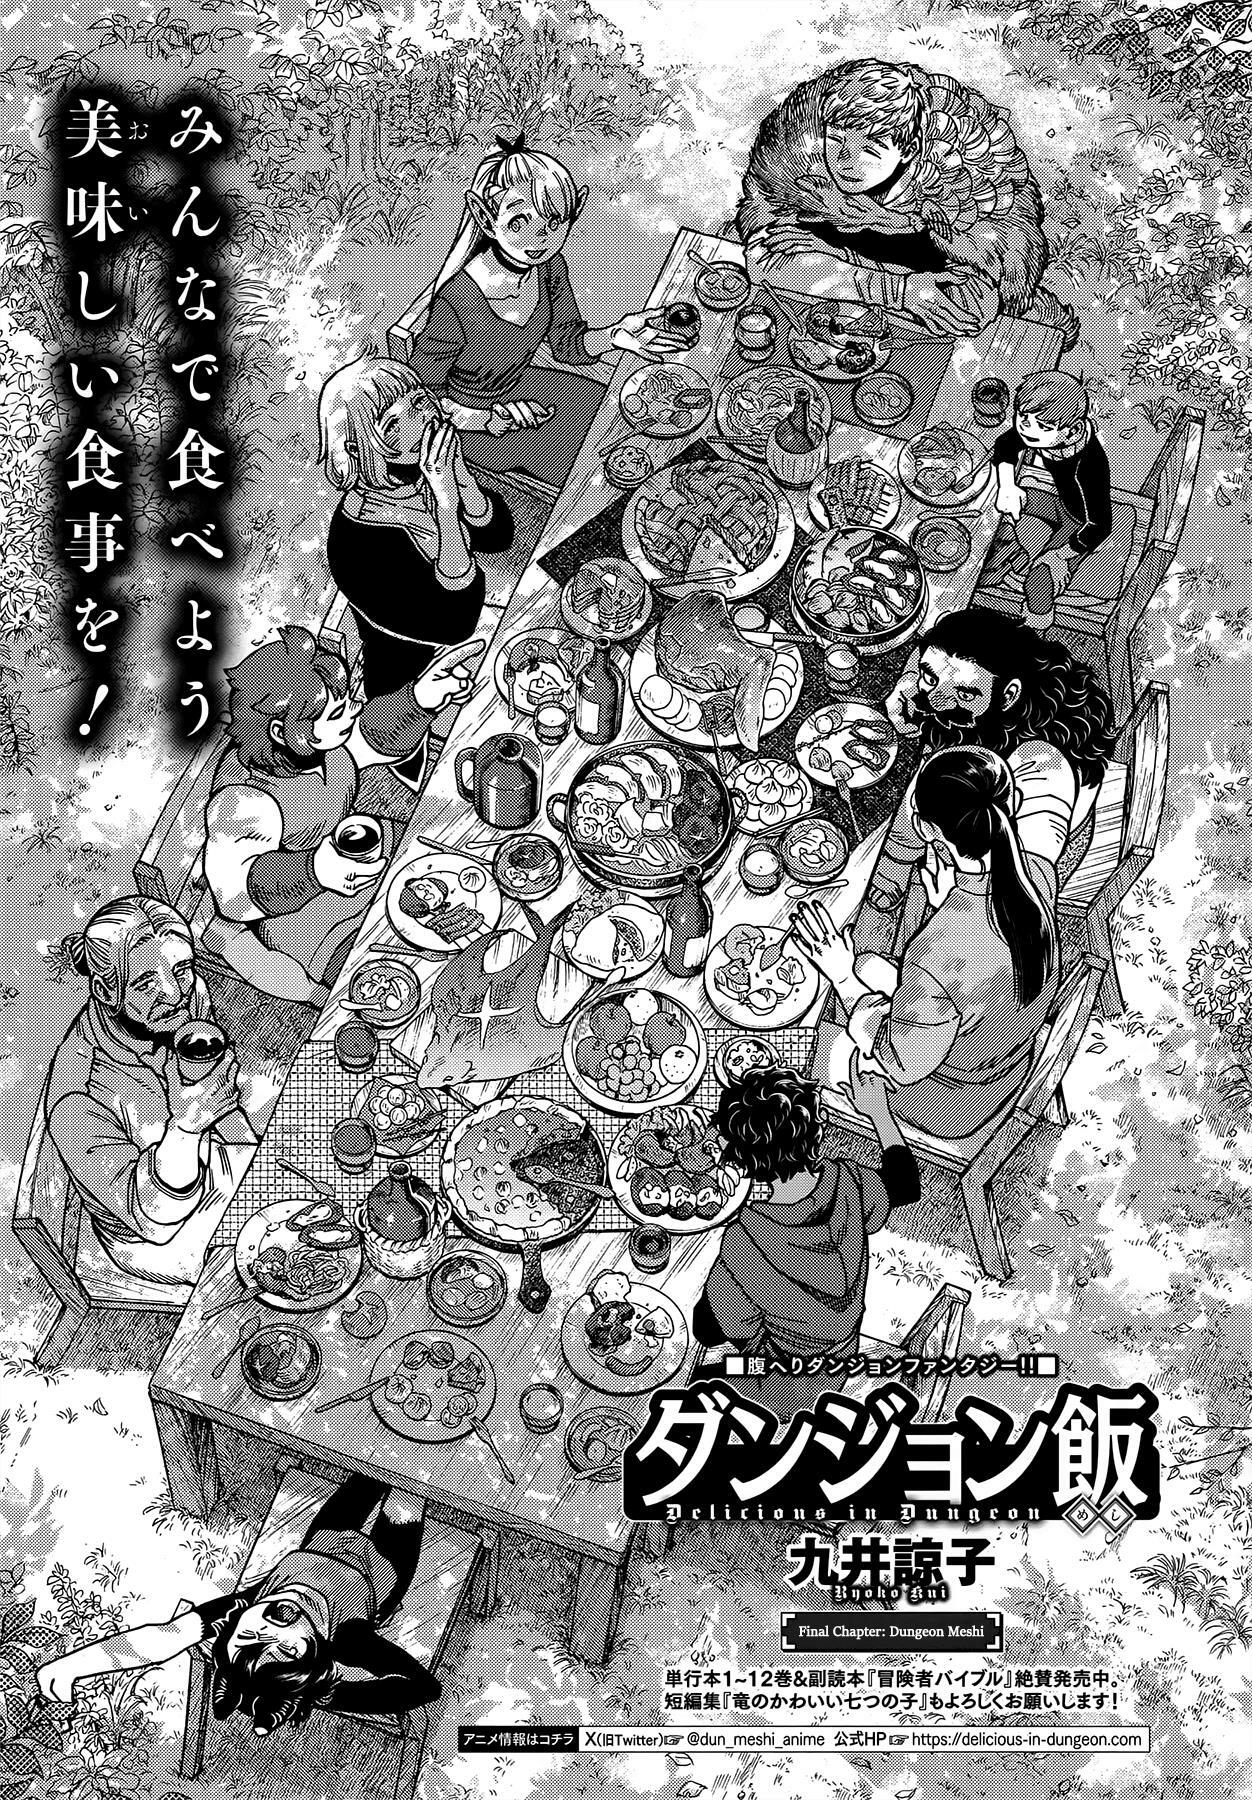 Dungeon Meshi Chapter 97: Final Chapter - Dungeon Meshi page 1 - Mangakakalot